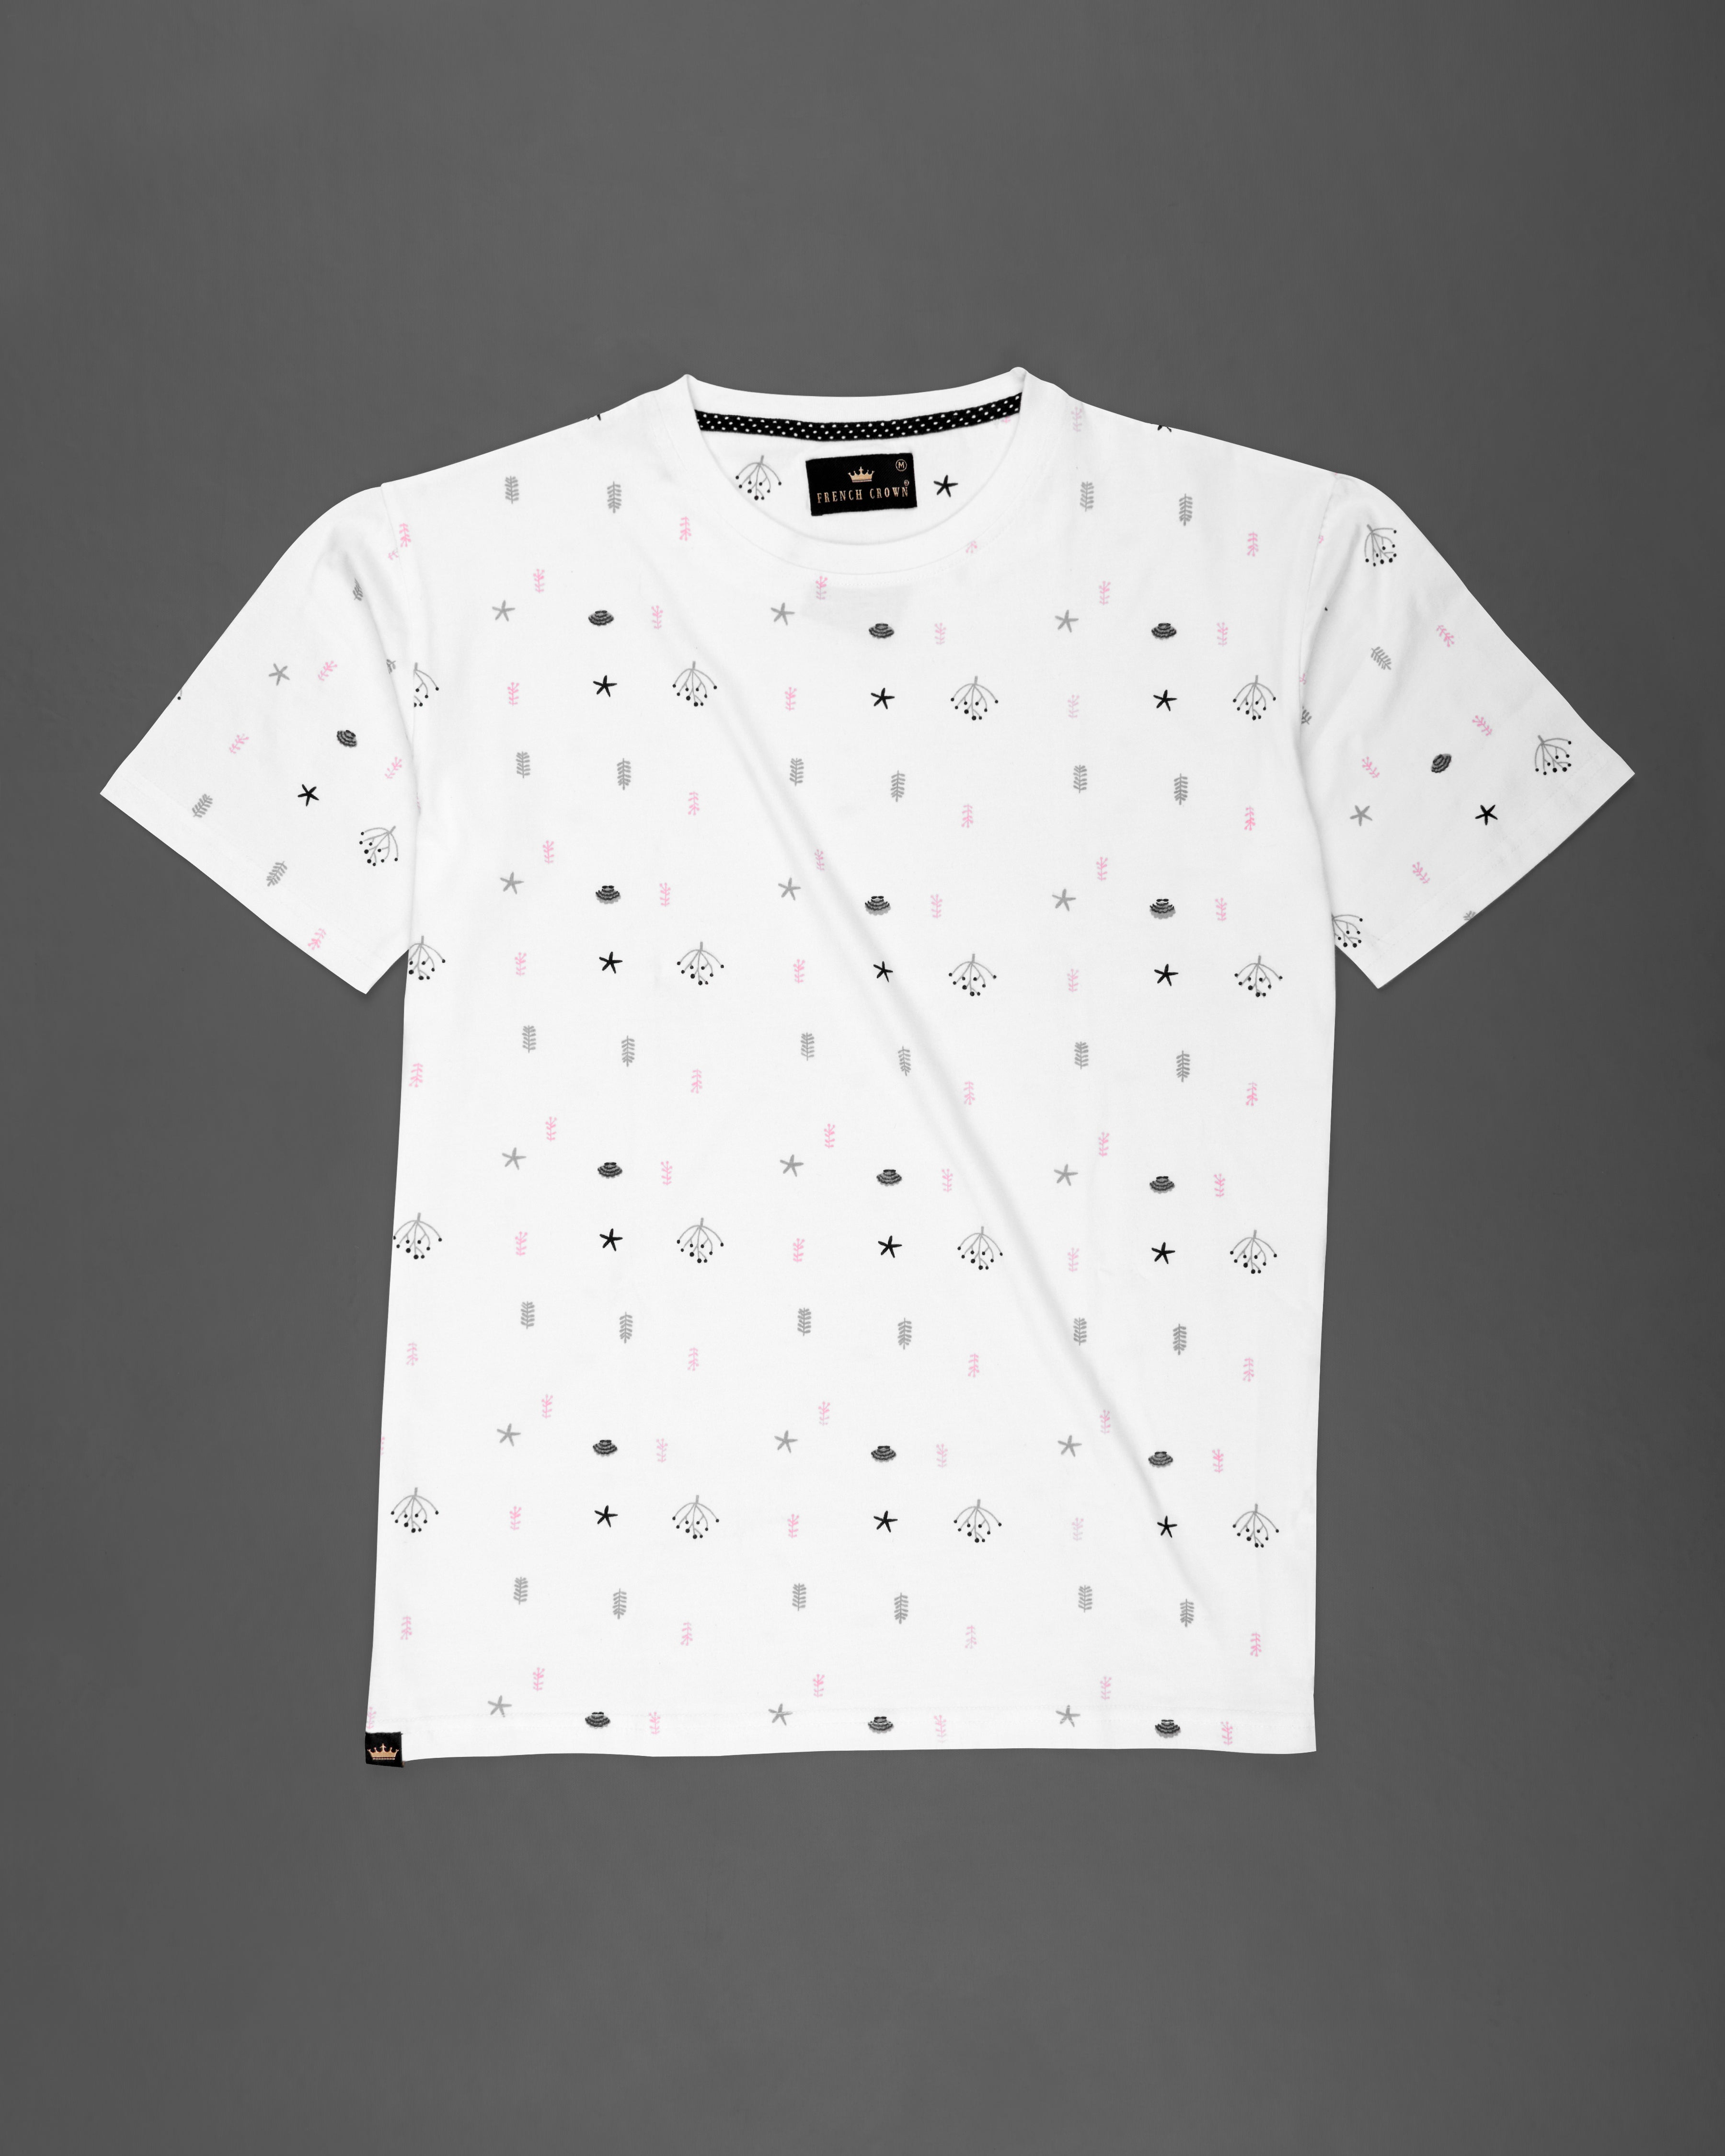 Bright White Multicolour Printed Premium Organic Cotton T-shirt TS661-S, TS661-M, TS661-L, TS661-XL, TS661-XXL